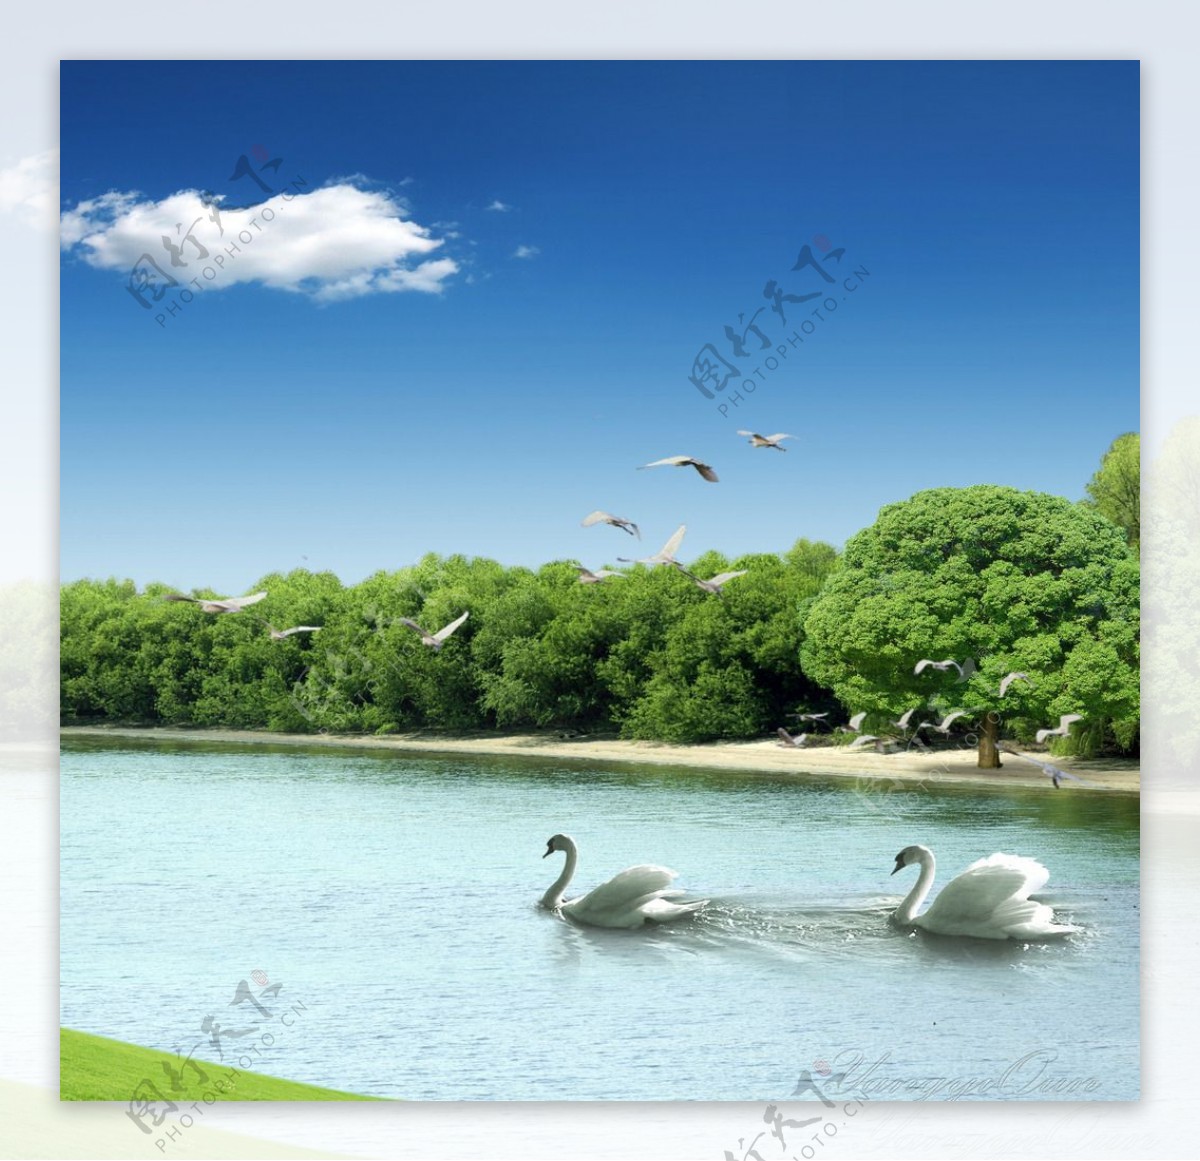 鸭子湖水风景图片